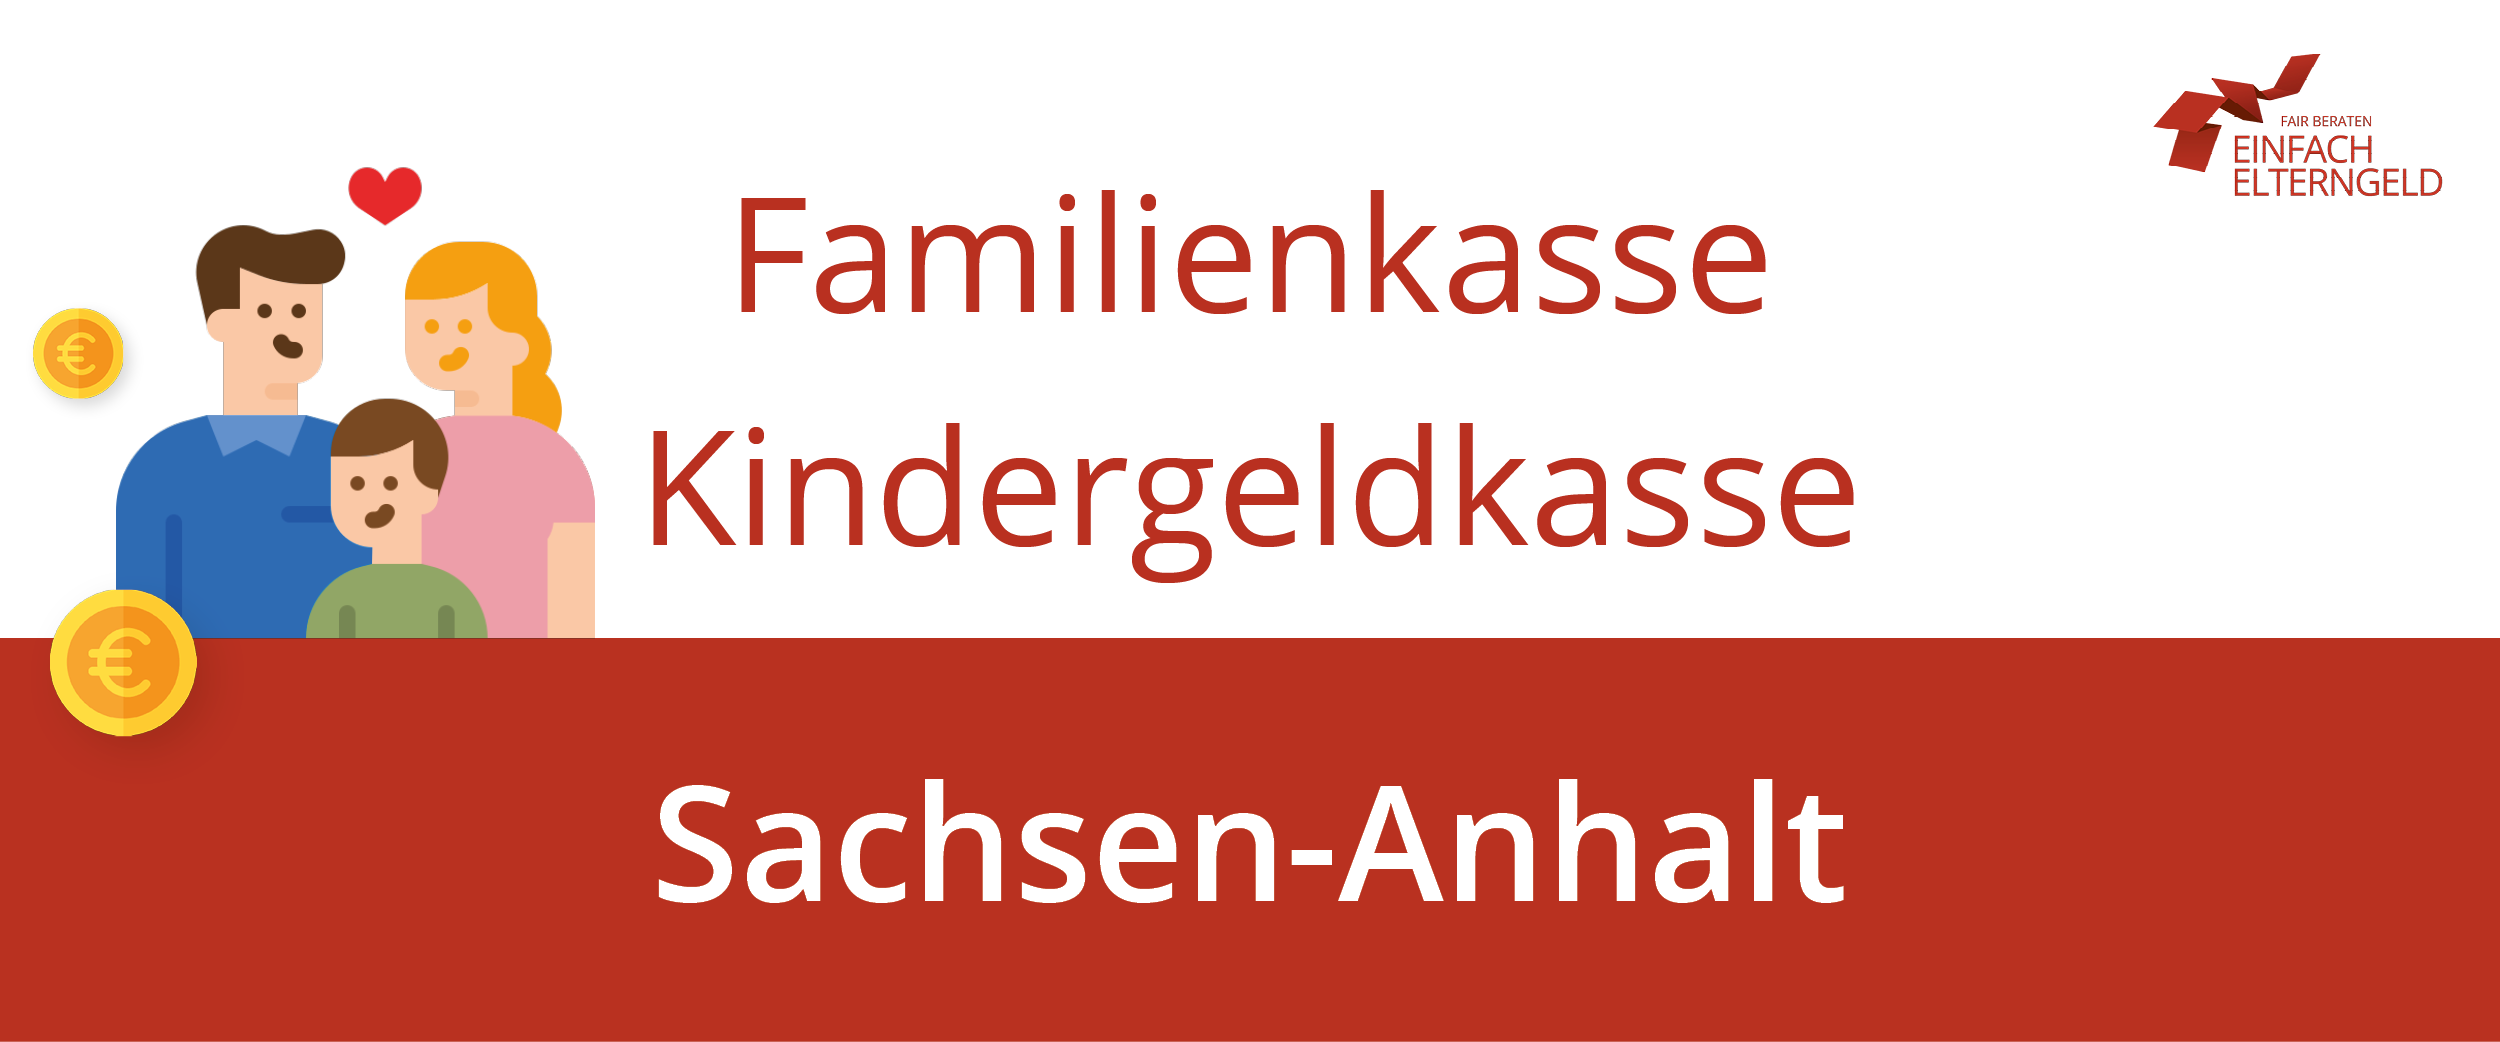 Familienkasse Kindergeldkasse Sachsen-Anhalt - Wir stellen Ihnen die Familienkassen in Sachsen-Anhalt vor.